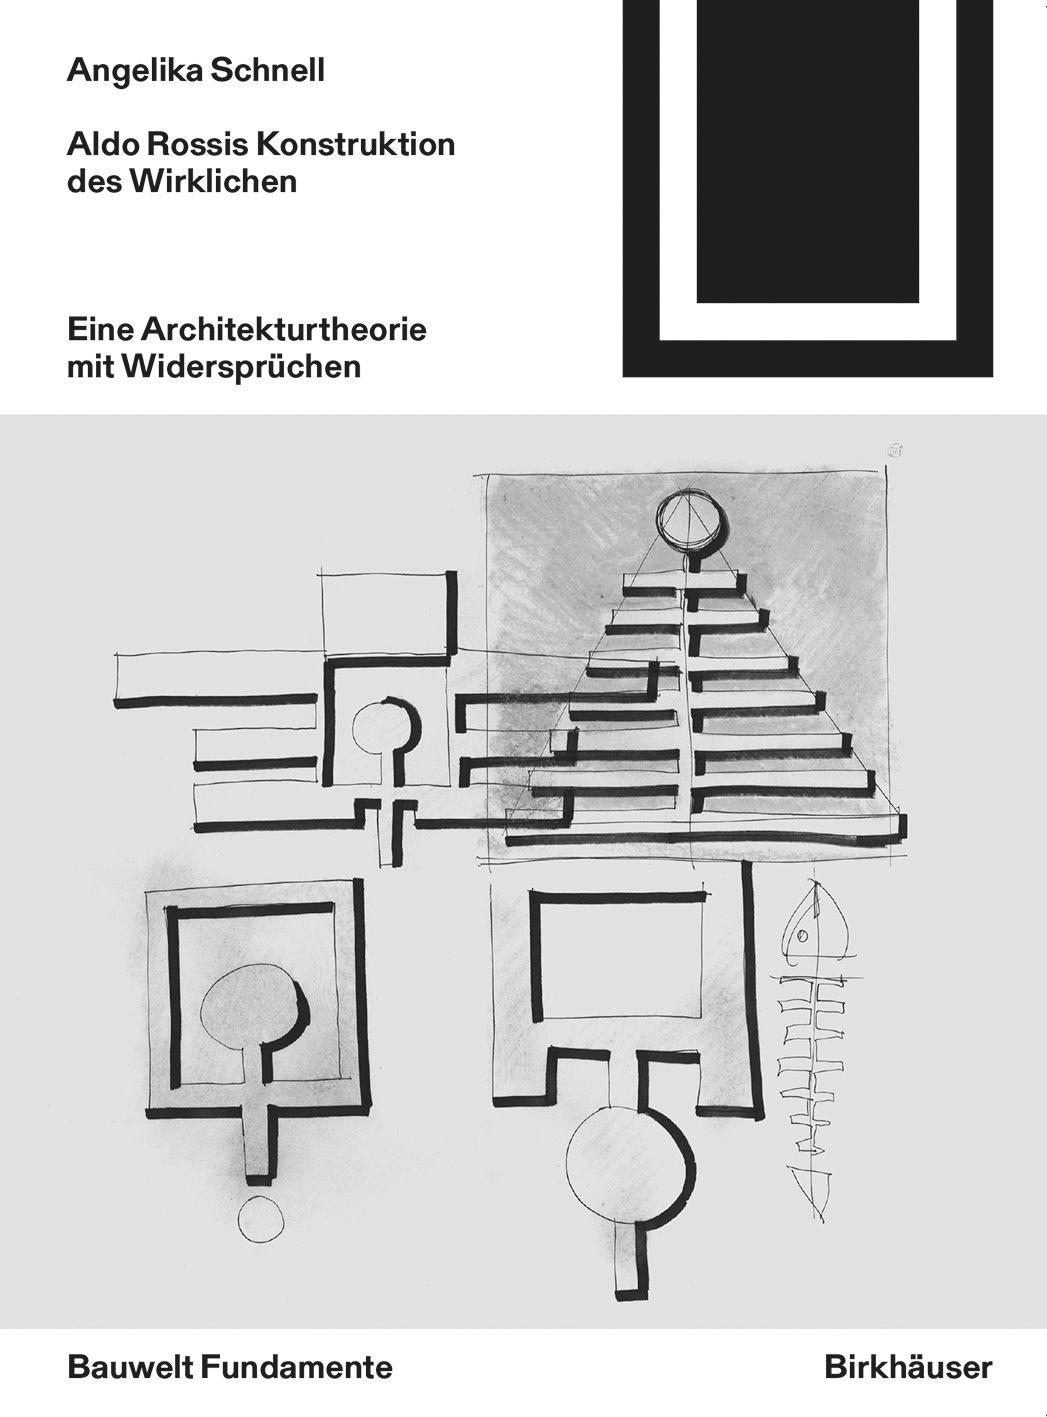 Aldo Rossis Konstruktion des Wirklichen's cover